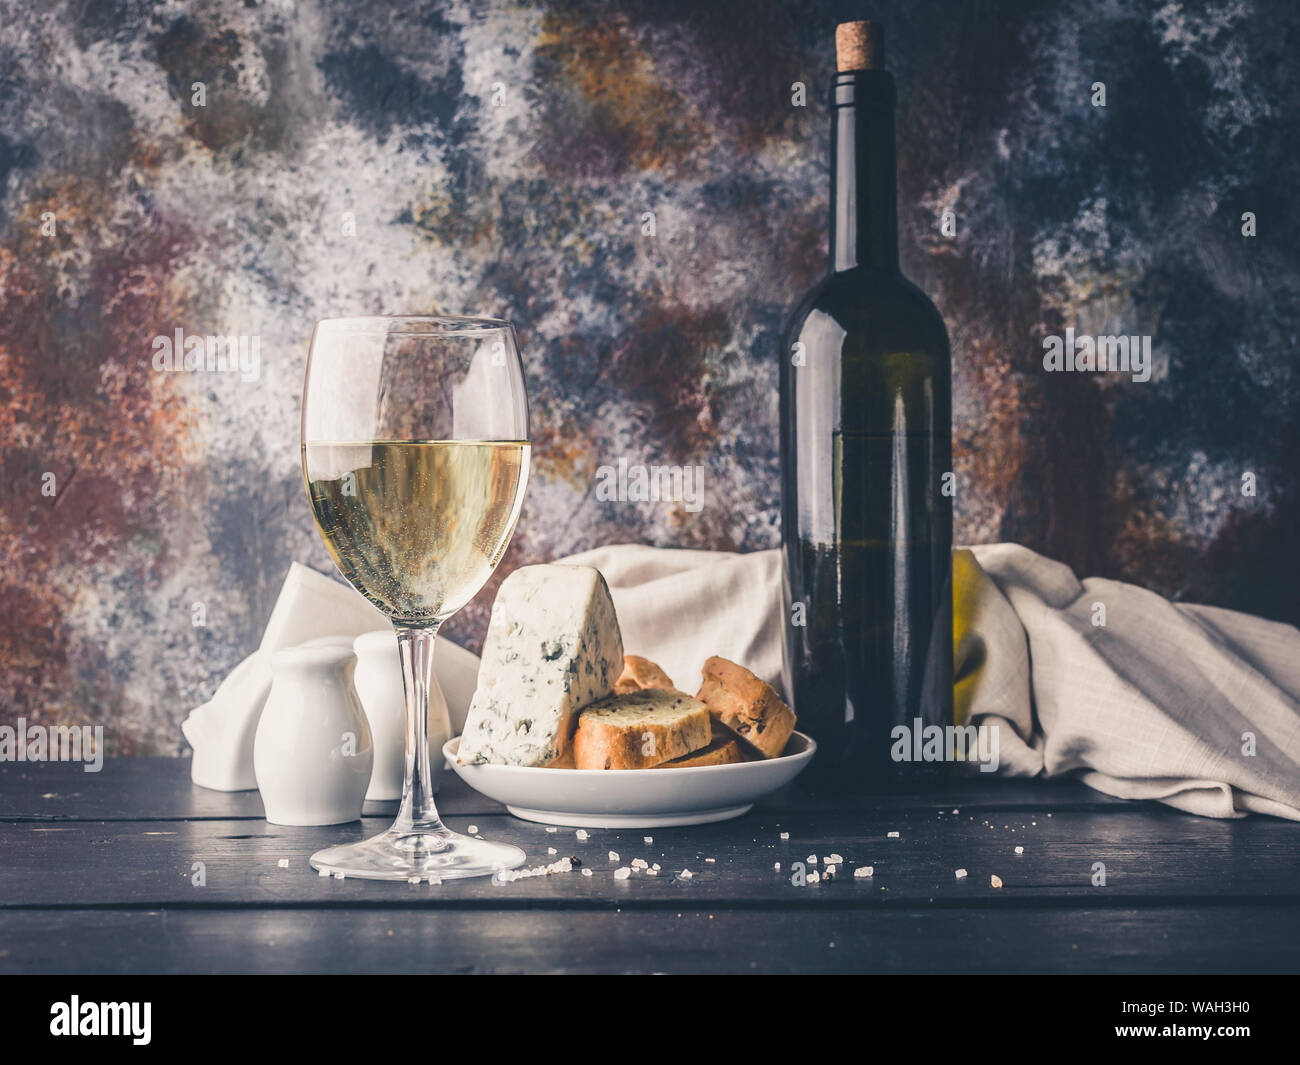 Ancora in vita un bicchiere di vino bianco, formaggio, pane e una bottiglia di vino. Bassa illuminazione tasto Foto Stock